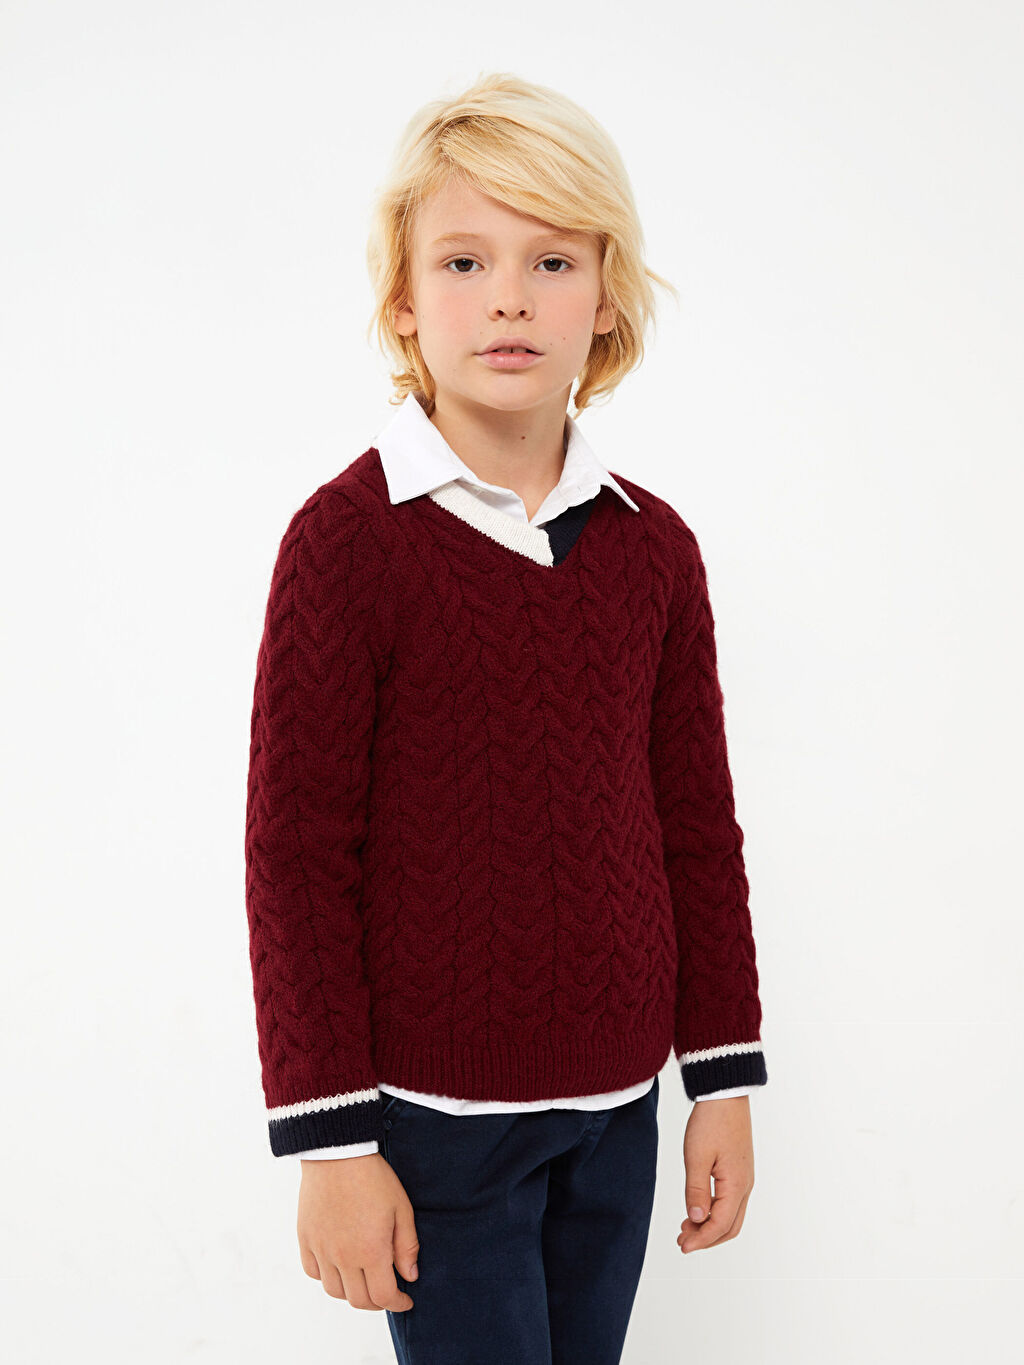 Трикотажный свитер для мальчика с длинным рукавом и V-образным вырезом Southblue женский трикотажный свитер с v образным вырезом и длинным рукавом